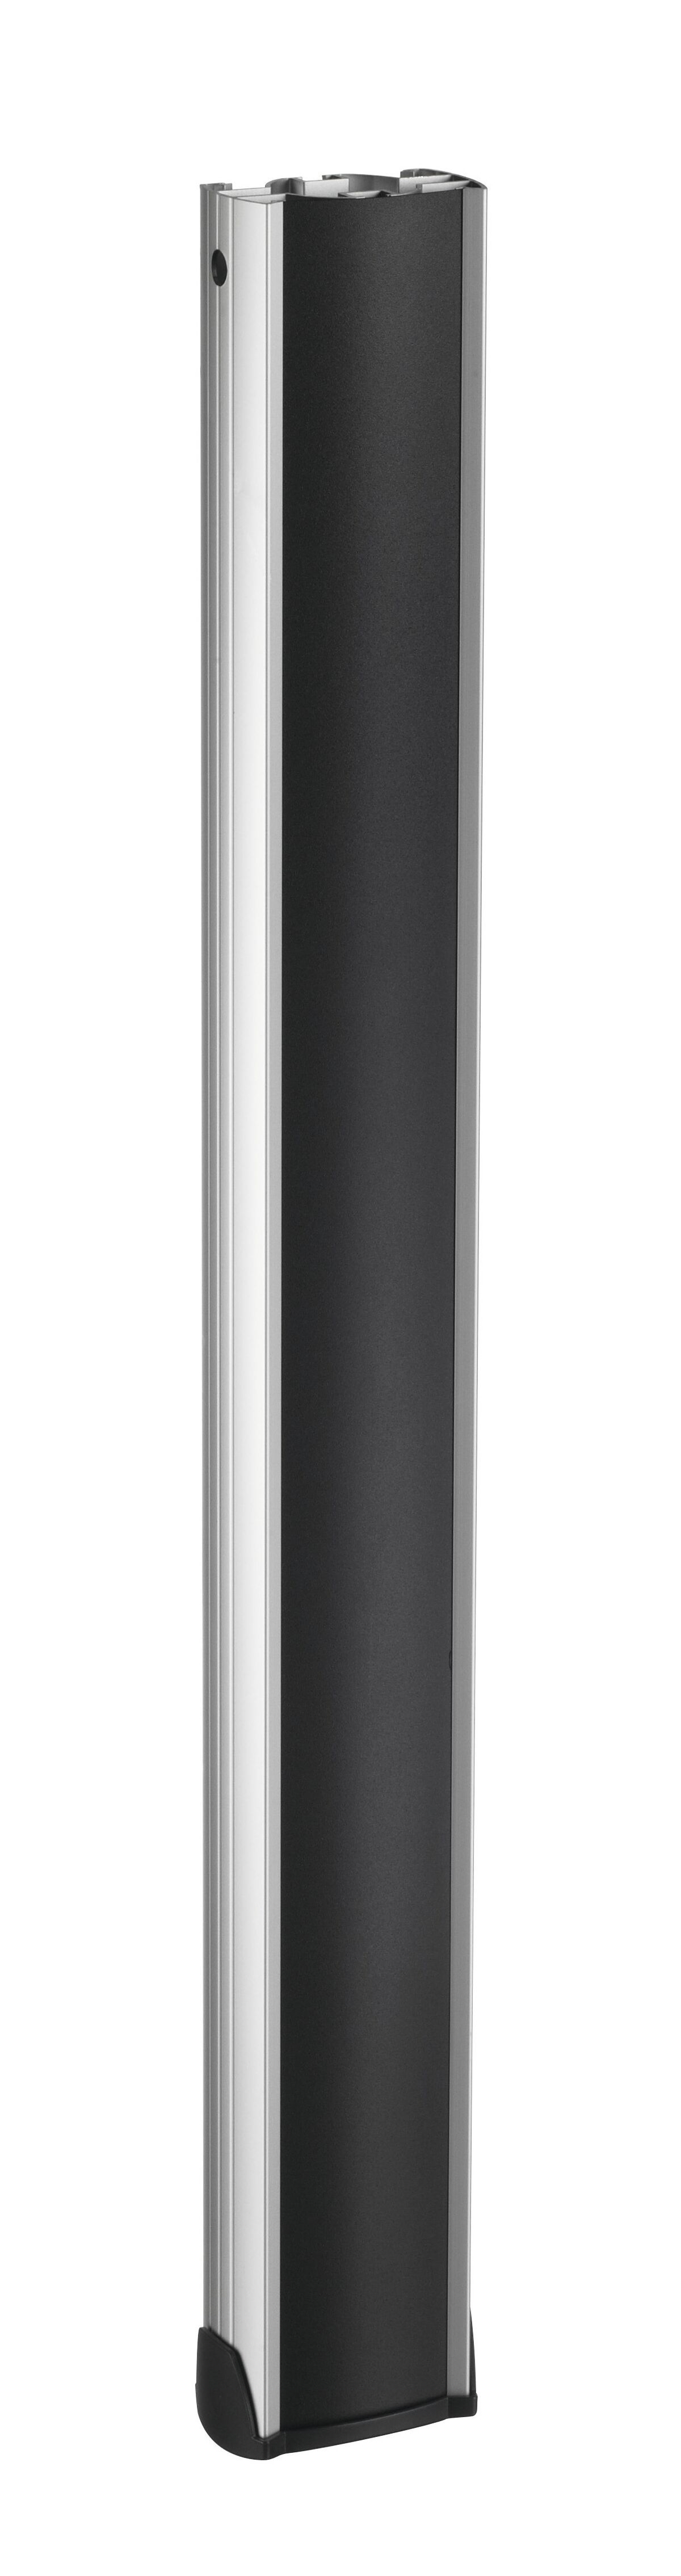 Vogel's PUC 2508 Pole 80 cm (silver) - Product